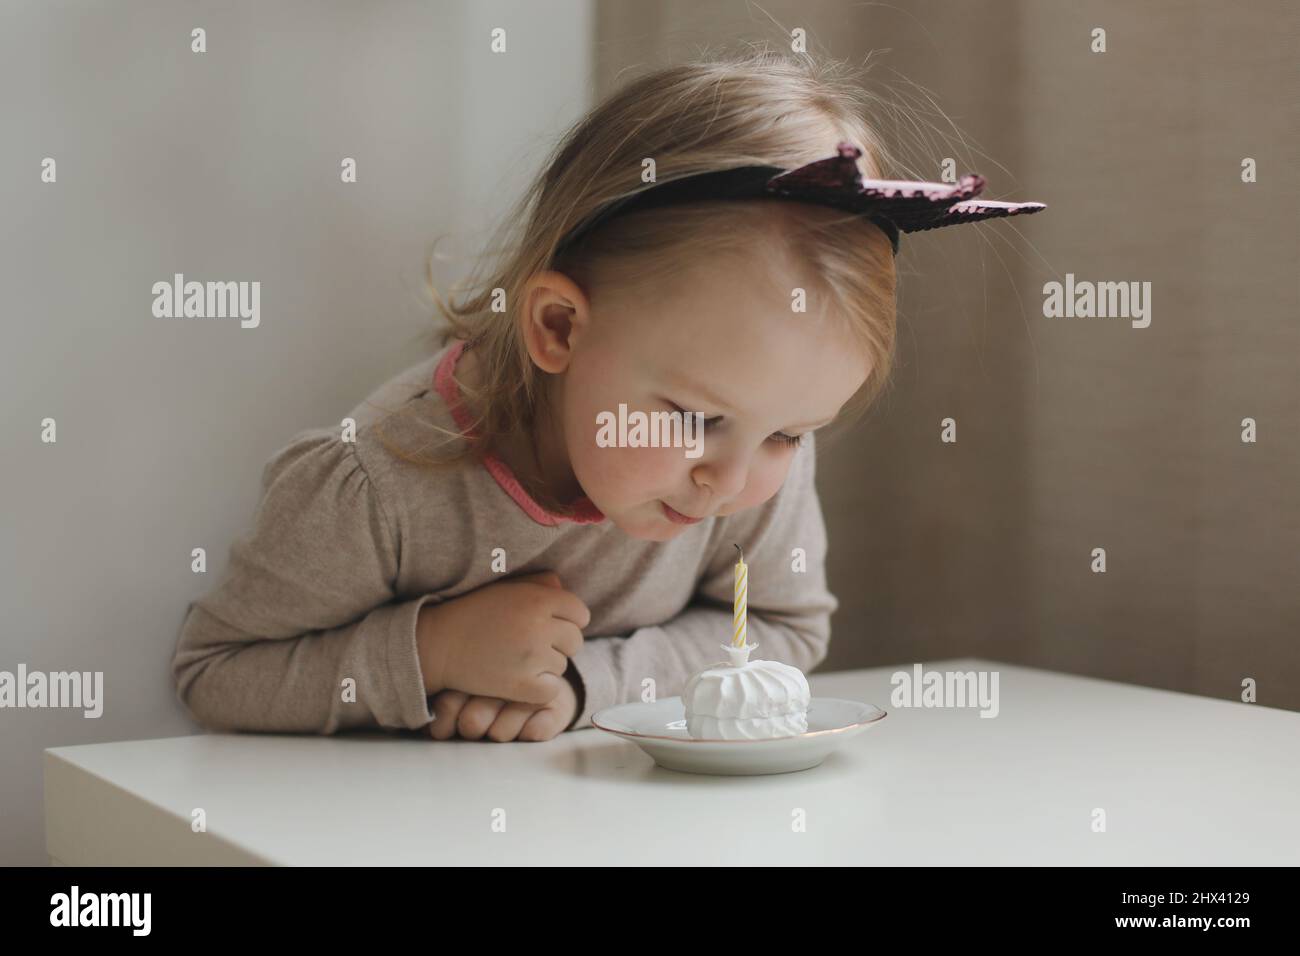 Mignon belle petite fille de bébé célébrant l'anniversaire. Enfant soufflant une bougie sur un gâteau. Fête d'anniversaire en famille pour un enfant adorable, magnifique Banque D'Images